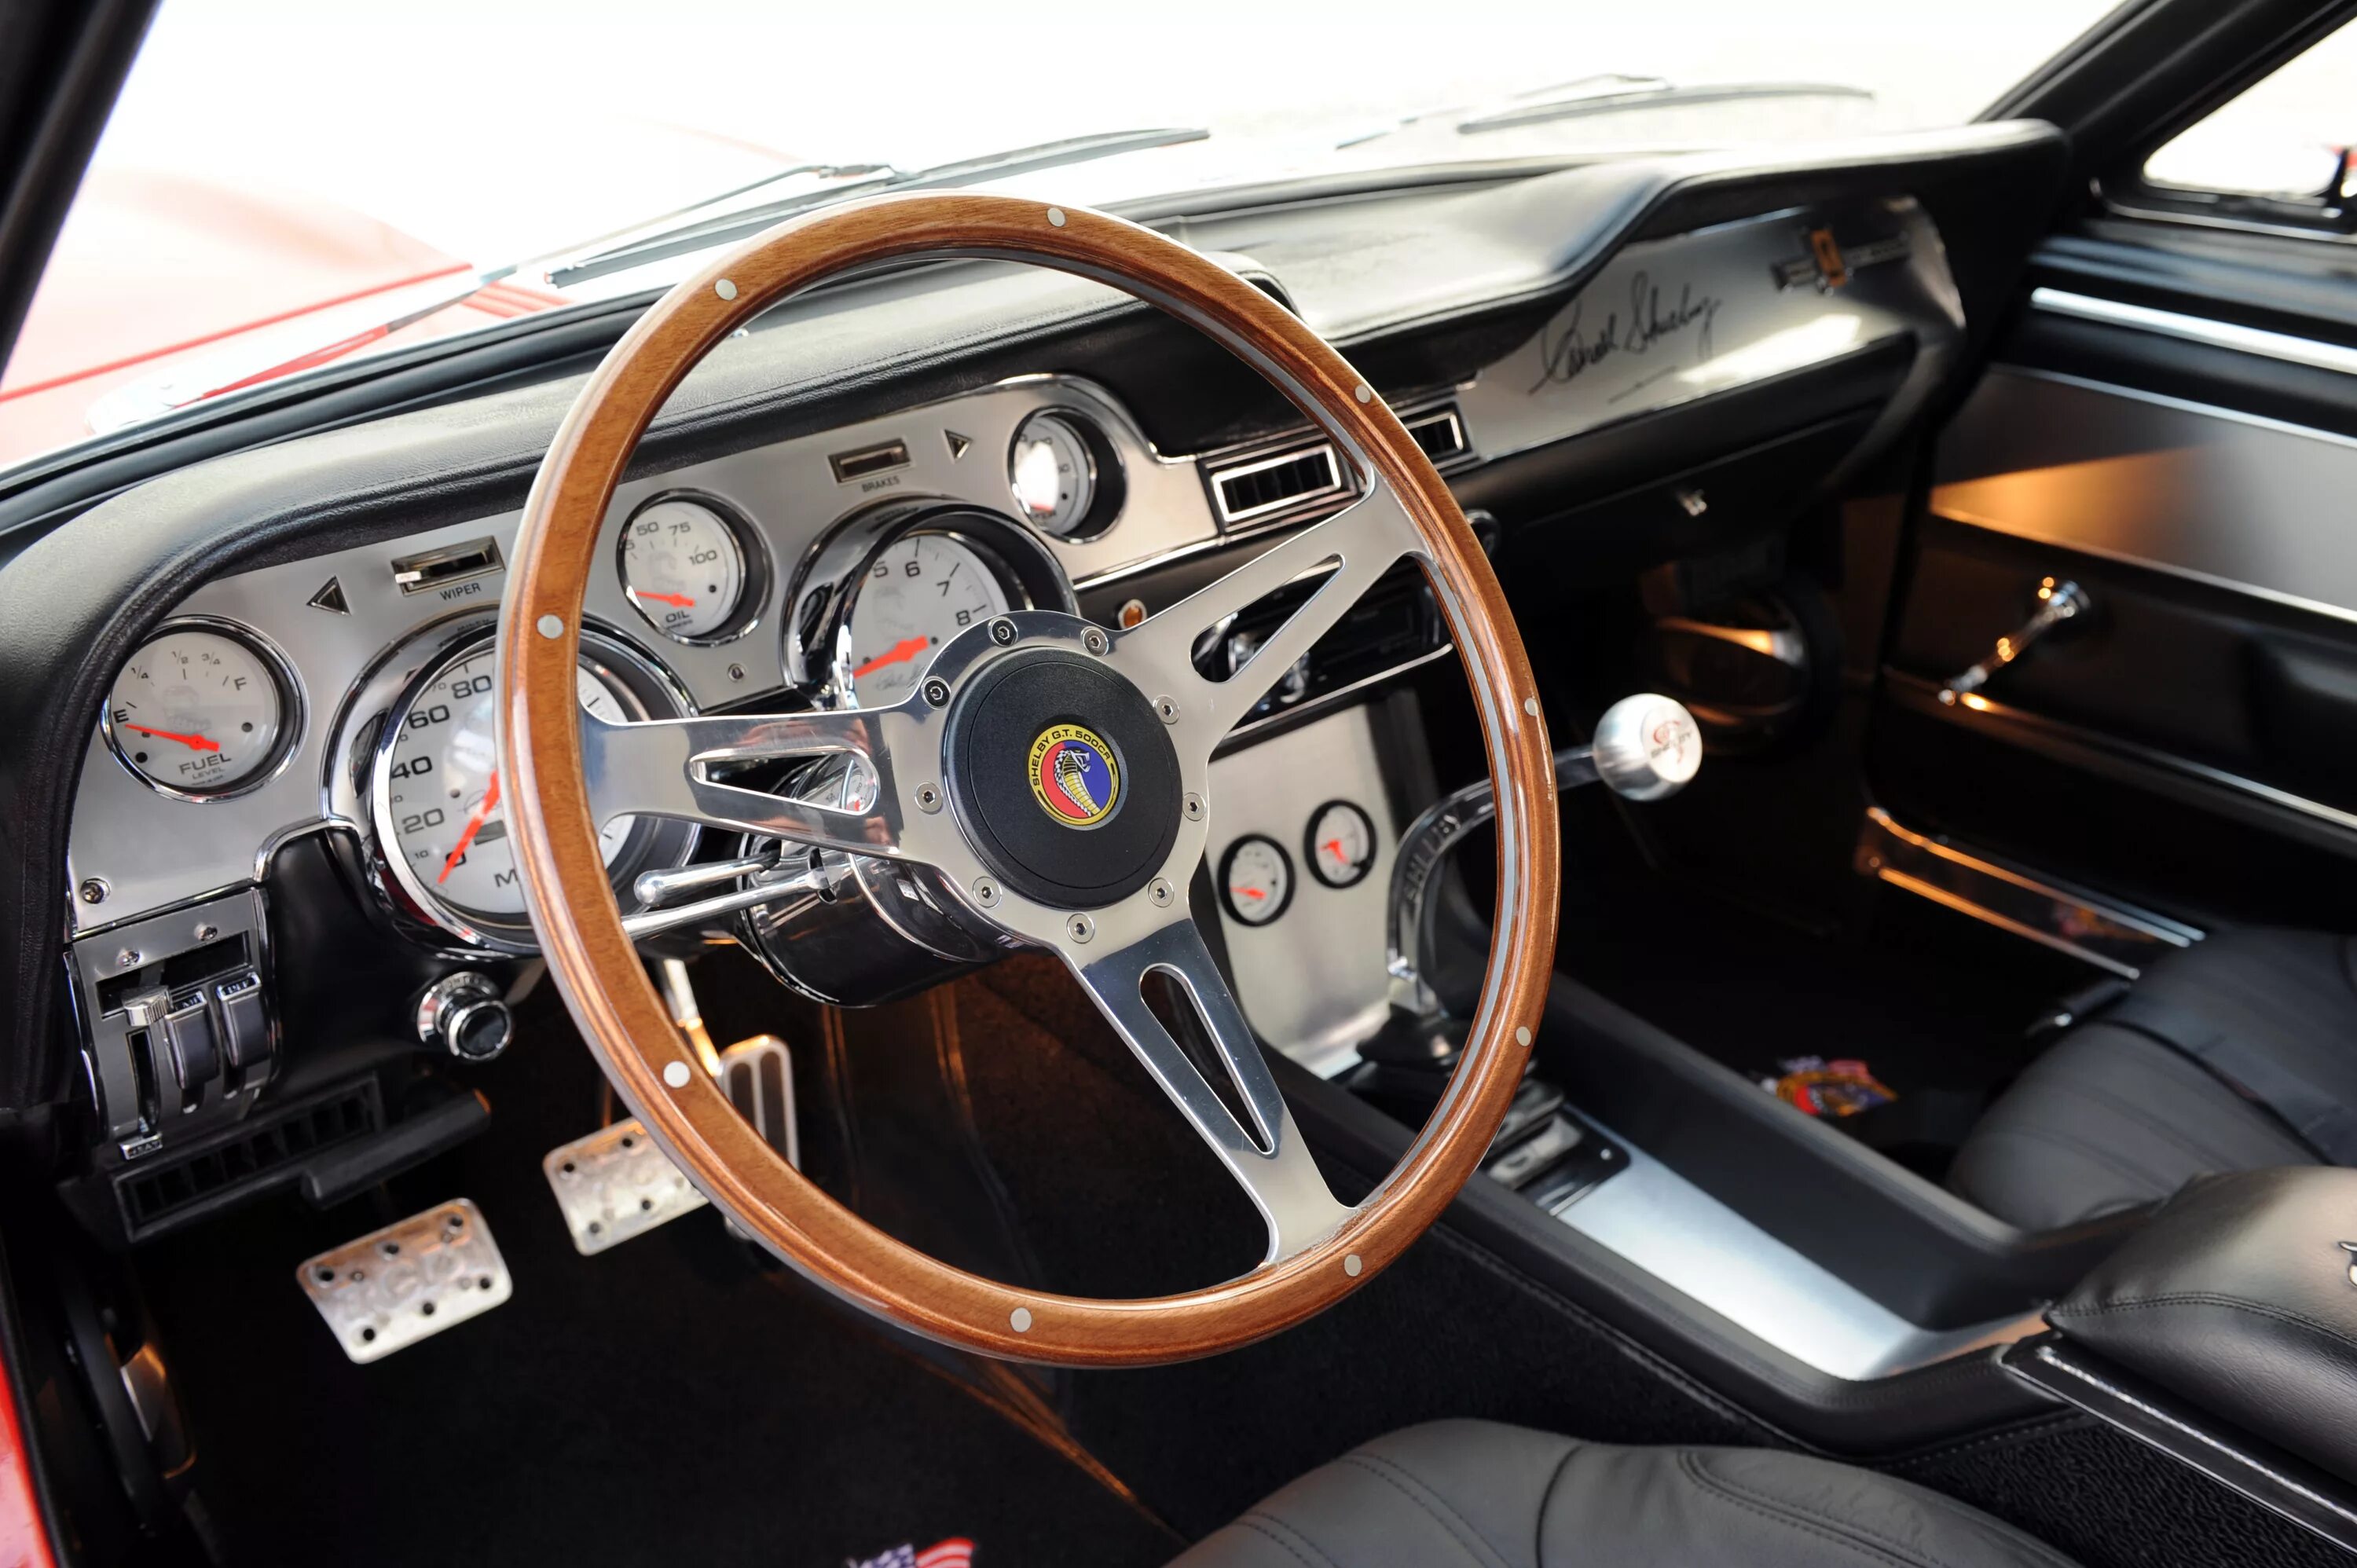 Торпеда классика. Ford Mustang 1969 салон. Форд Мустанг 1969 салон. Форд Мустанг 1967 салон. Porsche 911 1967 салон.